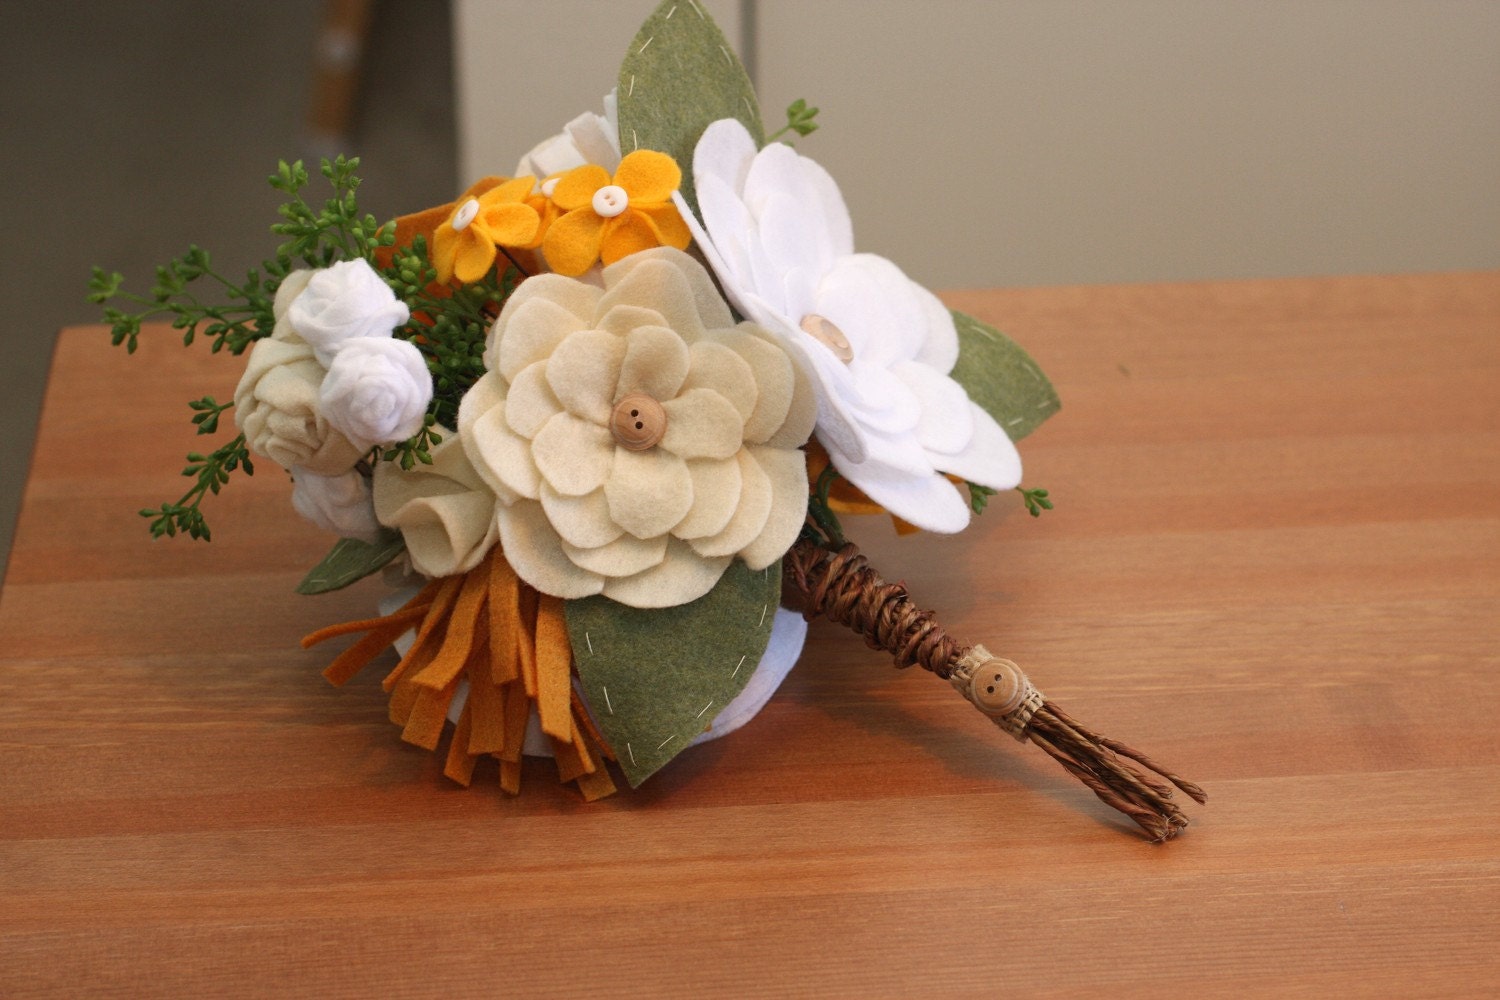 Personalizado Bouquet-Sweet Verão Flores sentida botões fio enrolado casca e ramos verdes